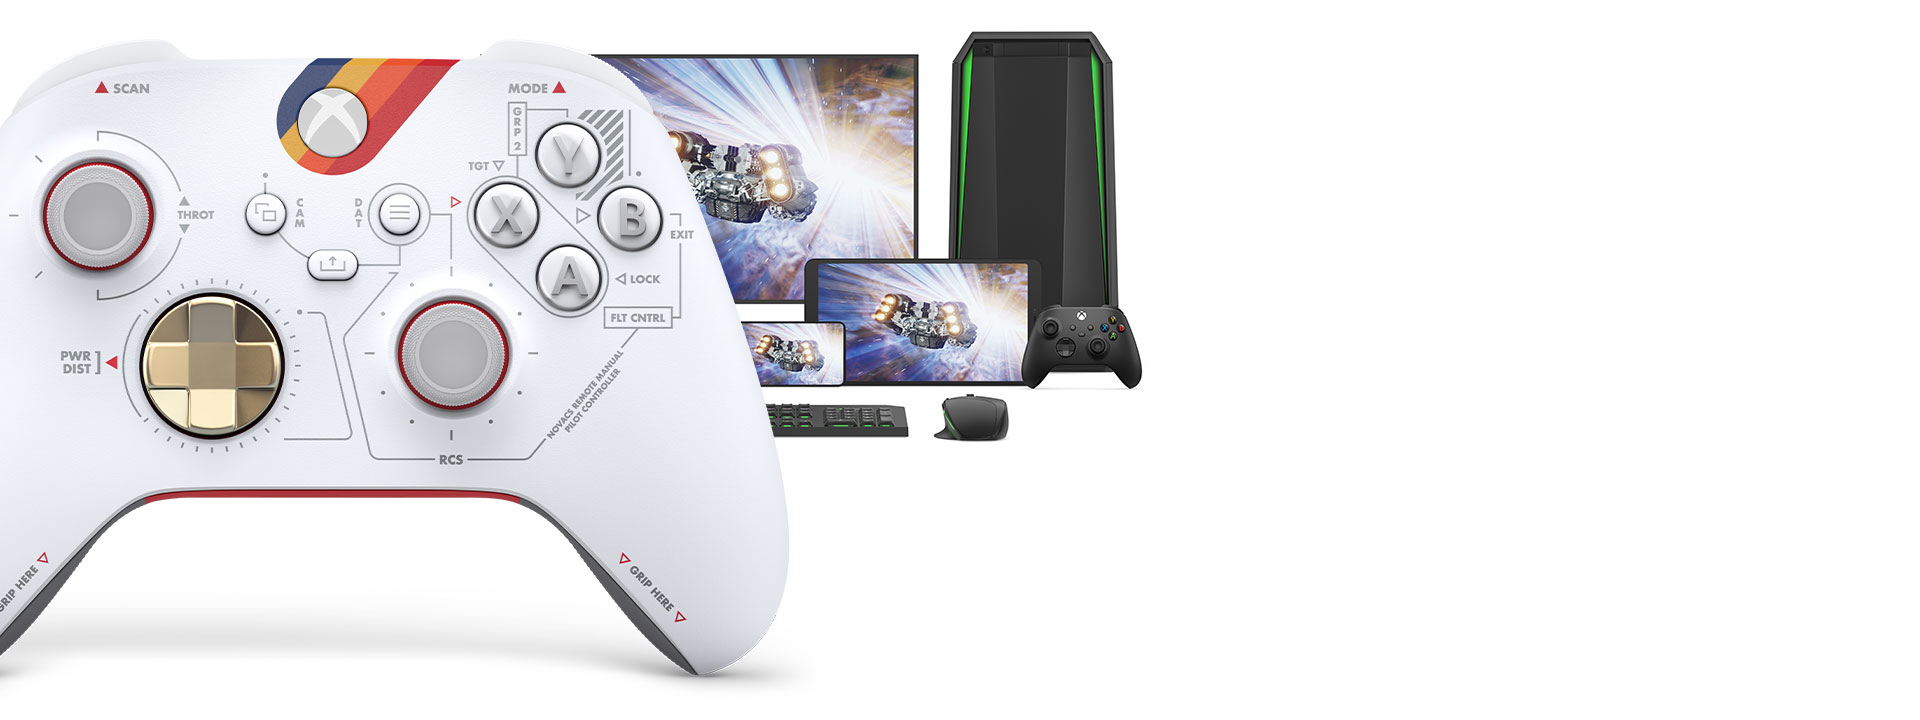 Vooraanzicht van de rechterkant van de Xbox draadloze controller – Starfield Limited Edition met verschillende speelbare platforms erachter